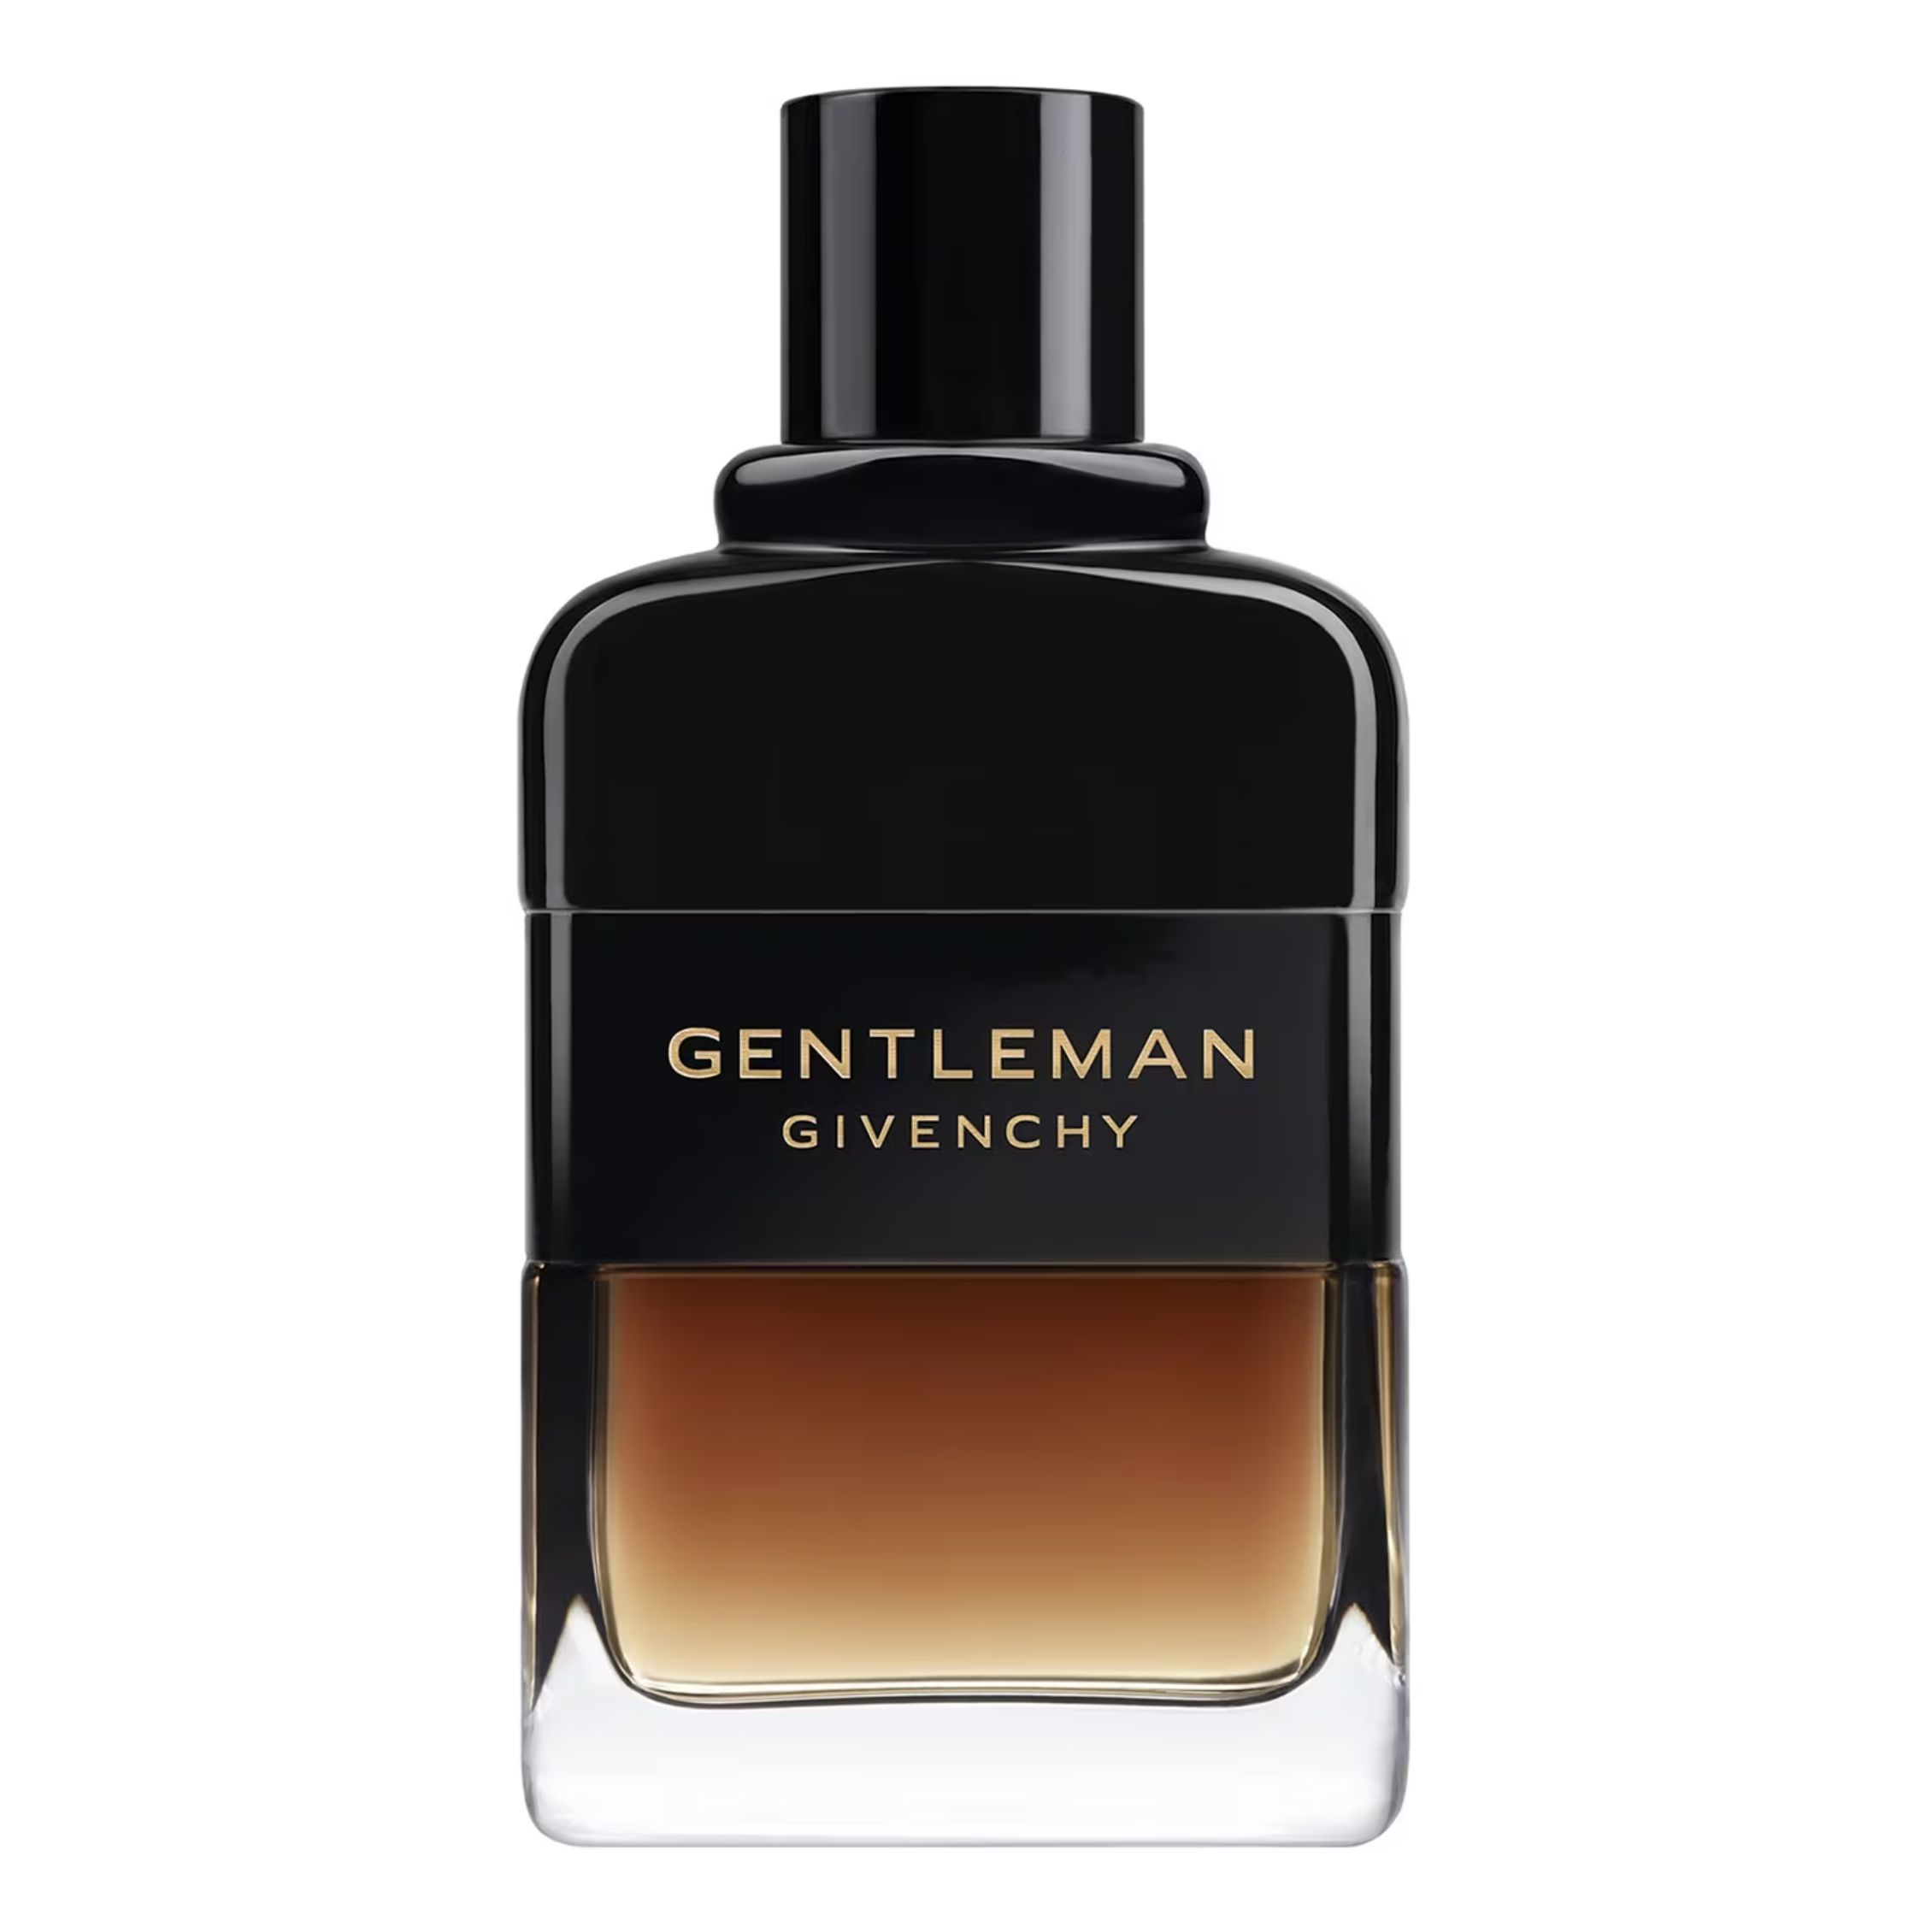 Givenchy Gentleman Reserve privee Eau de Parfum. Gentleman Givenchy parfume Black.